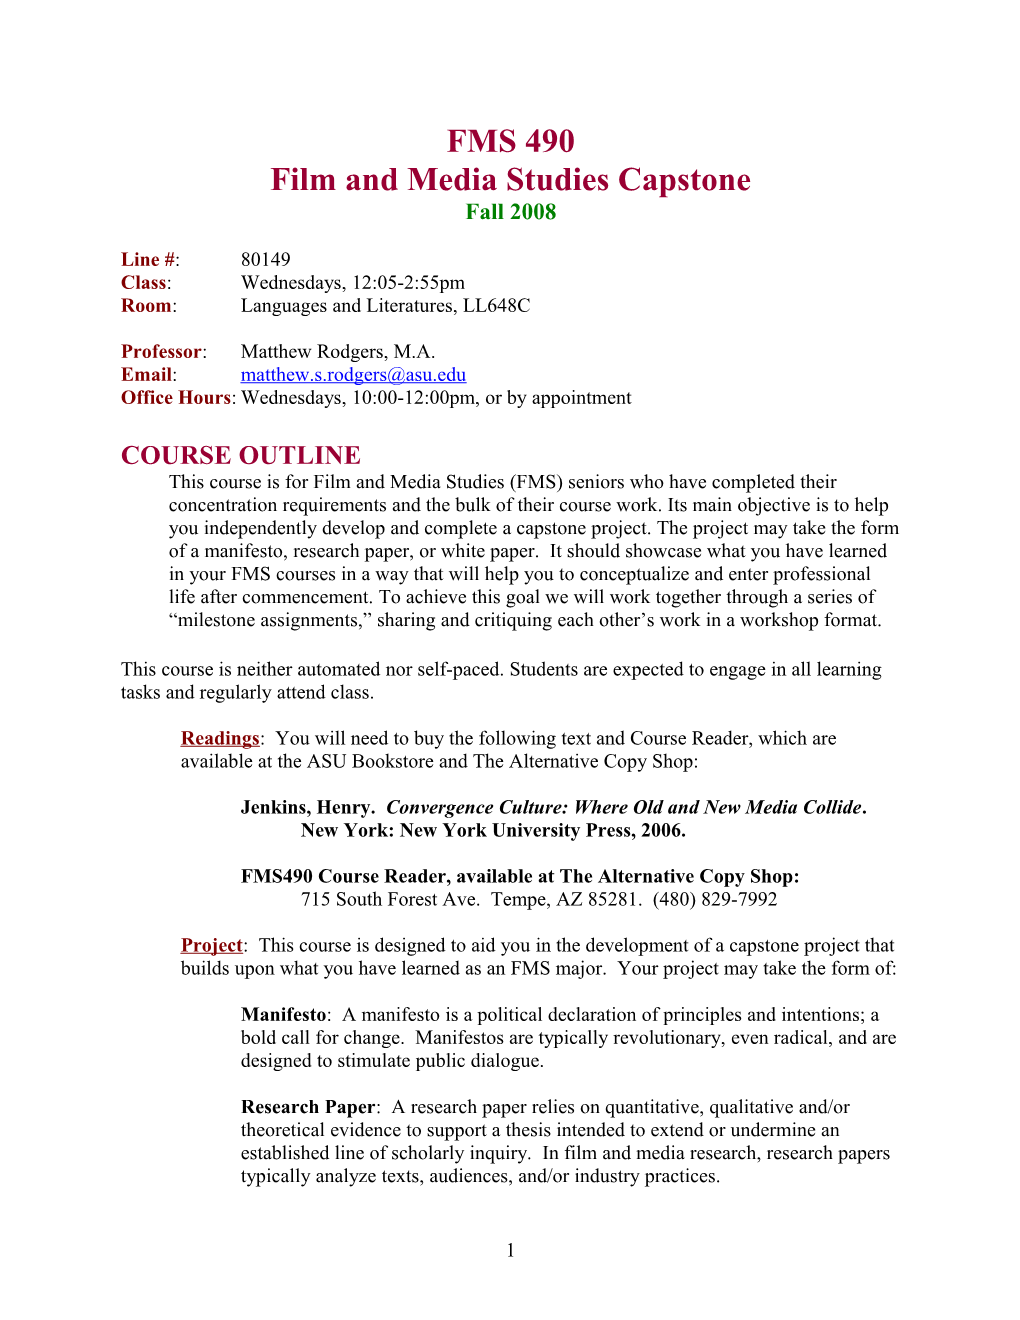 Film and Media Studies Capstone